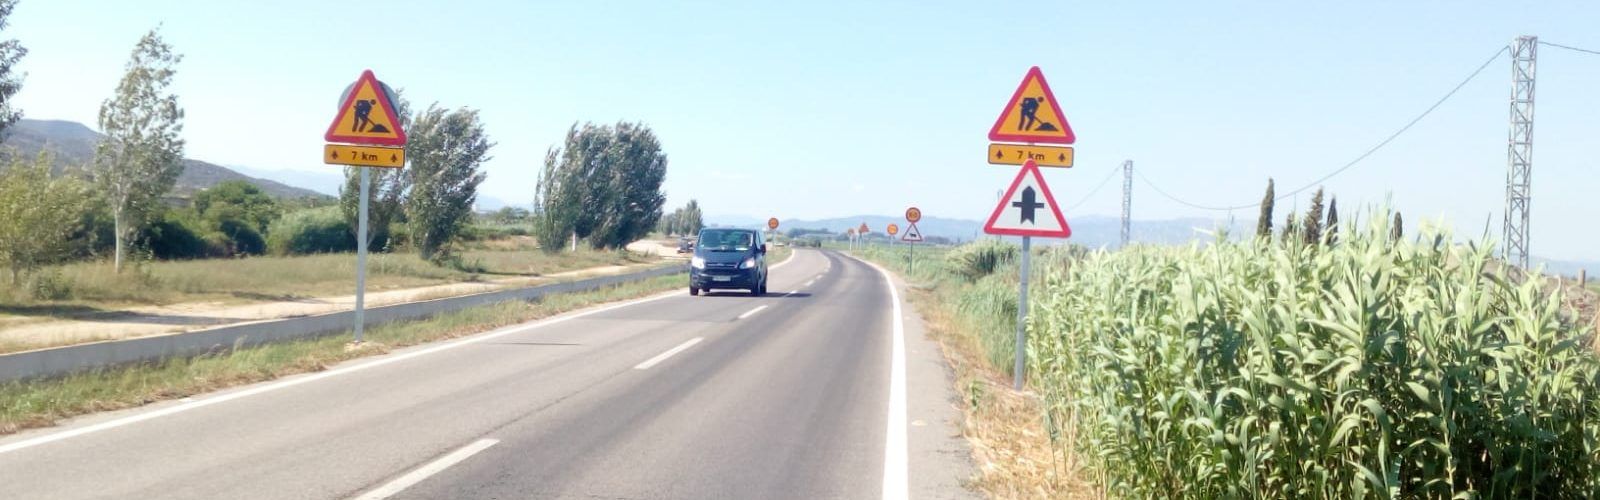 La Diputació de Tarragona millora la seguretat viària a la carretera entre Amposta i Sant Carles de la Ràpita